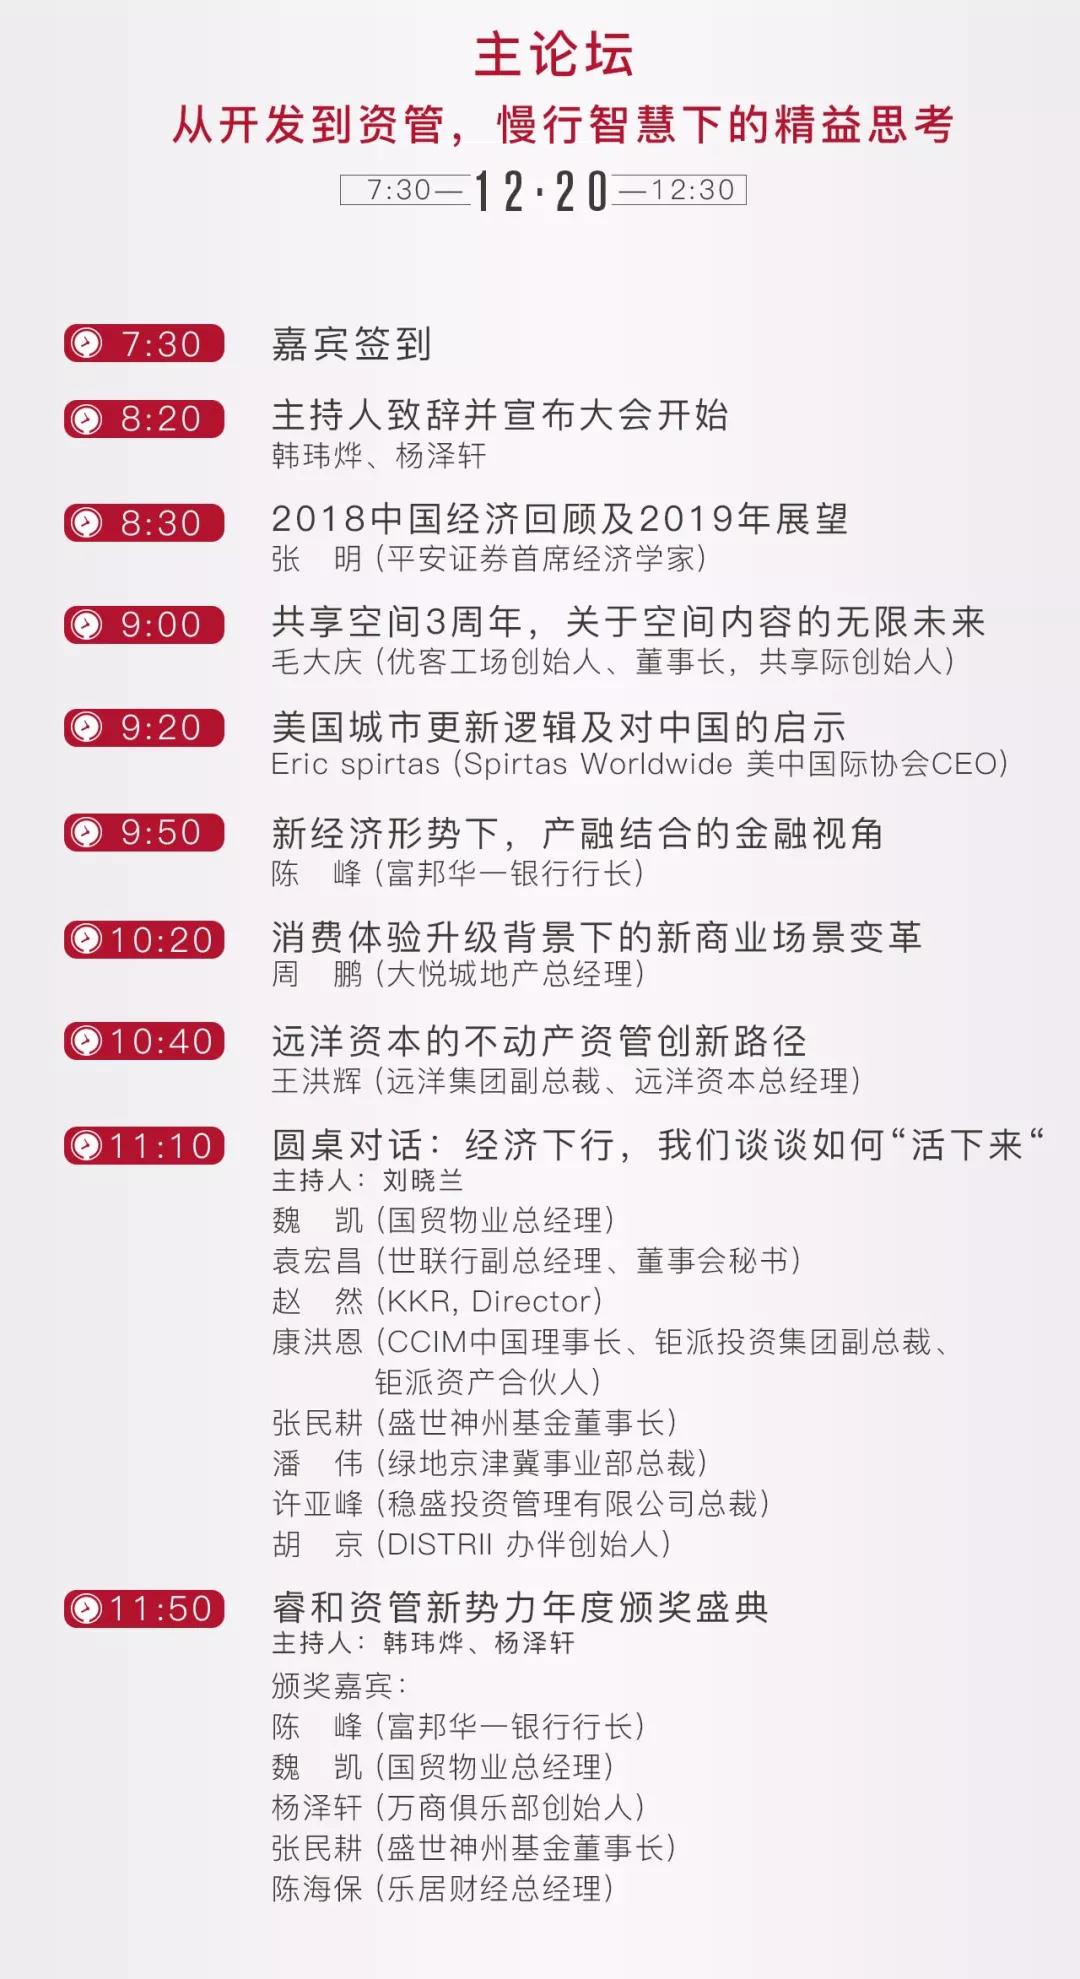 第三届（2018）中国不动产资管大会暨资管新势力年度颁奖盛典（北京）